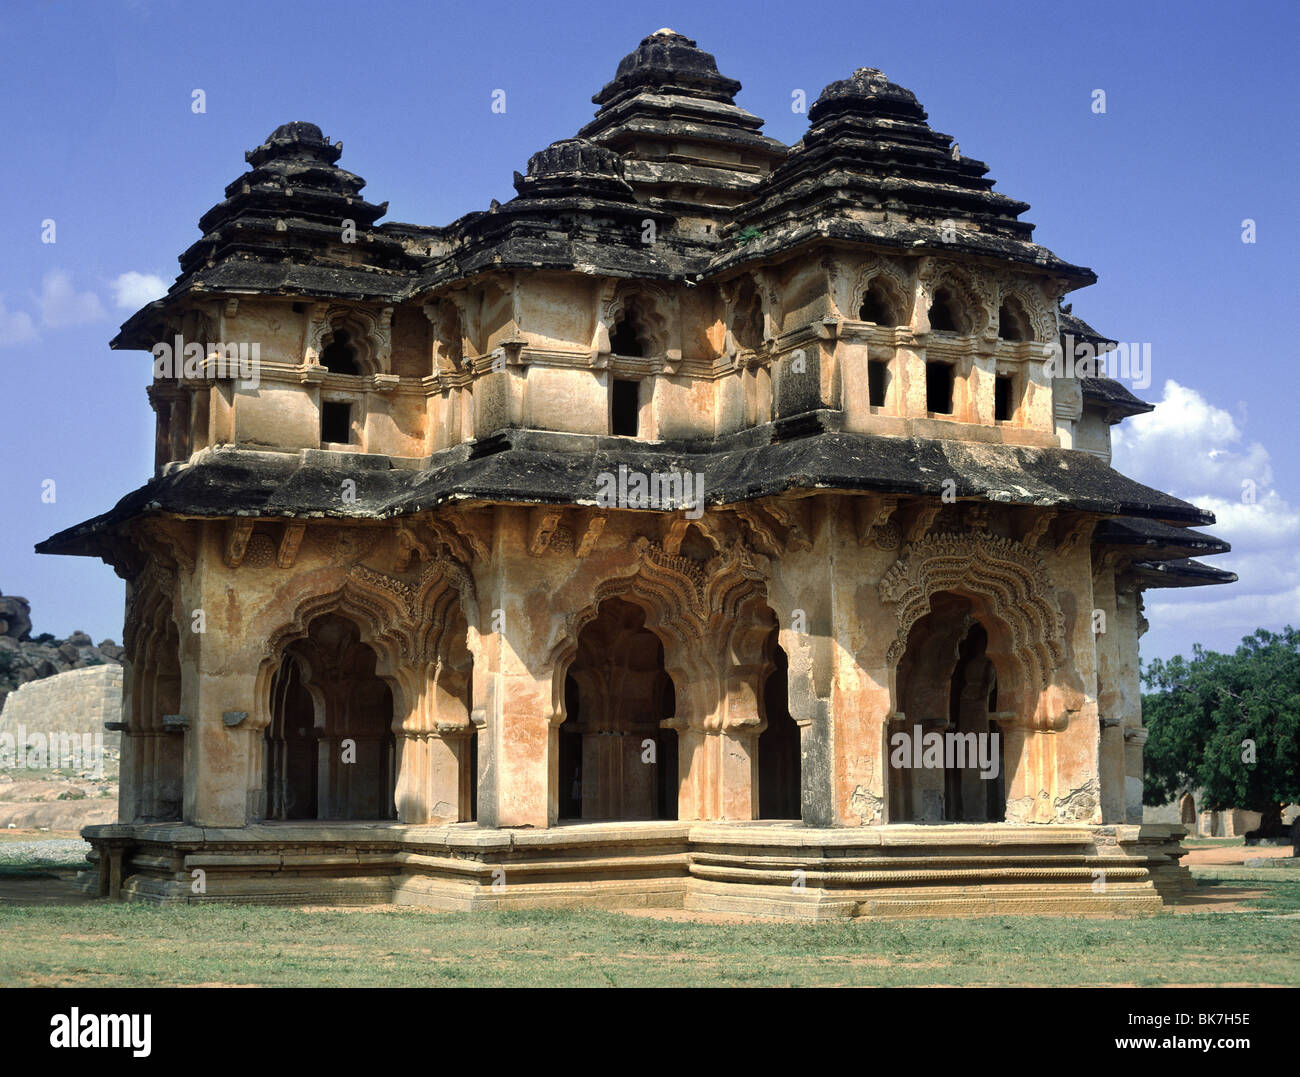 Le Lotus Mahal Palace dans le salon, un Hindou construction d'inspiration islamique, ruines de Hampi, Karnataka, Inde, Asie Banque D'Images